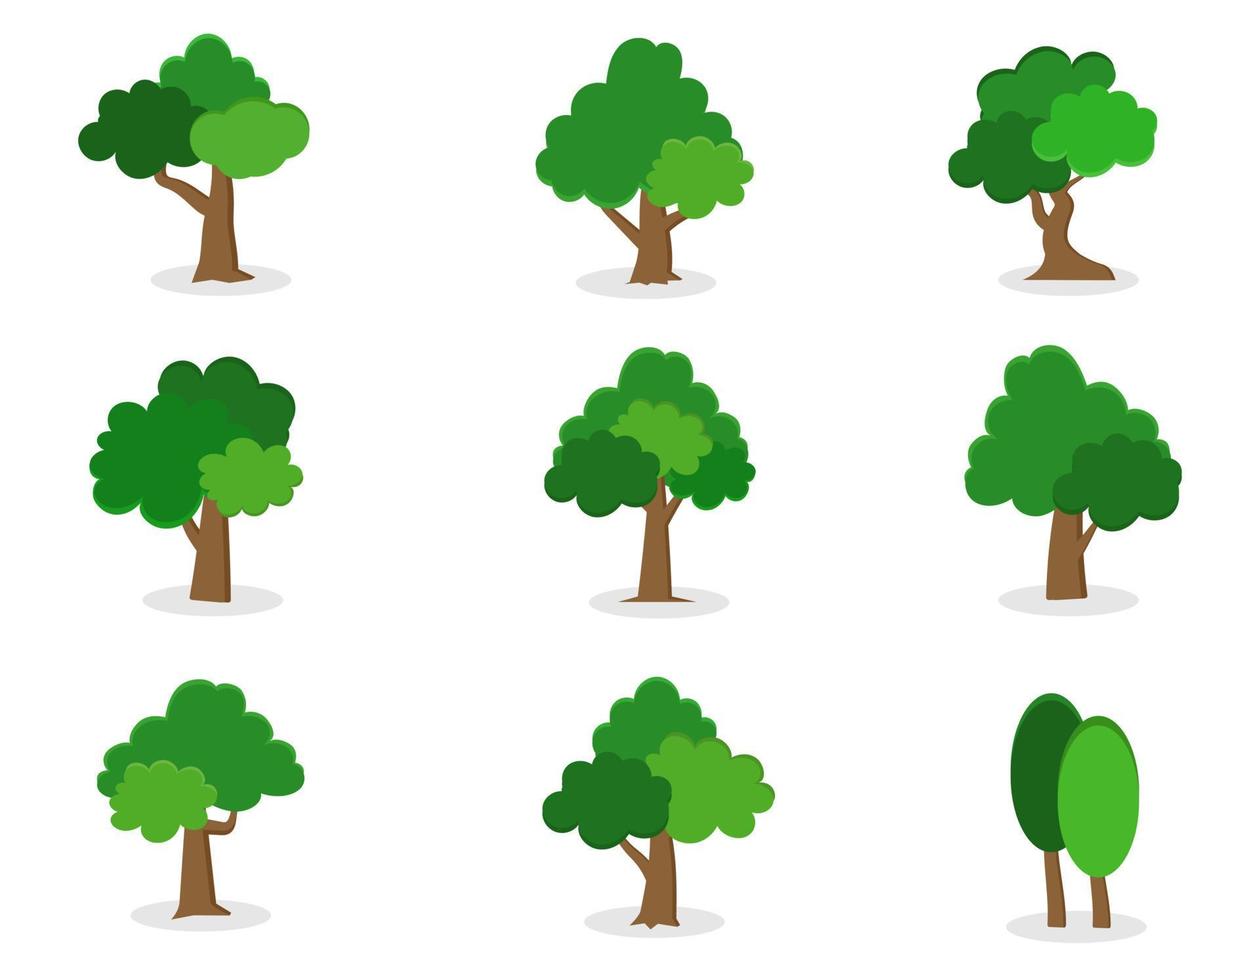 coleção de ícone de árvores planas. pode ser usado para ilustrar qualquer tópico sobre natureza ou estilo de vida saudável. vetor